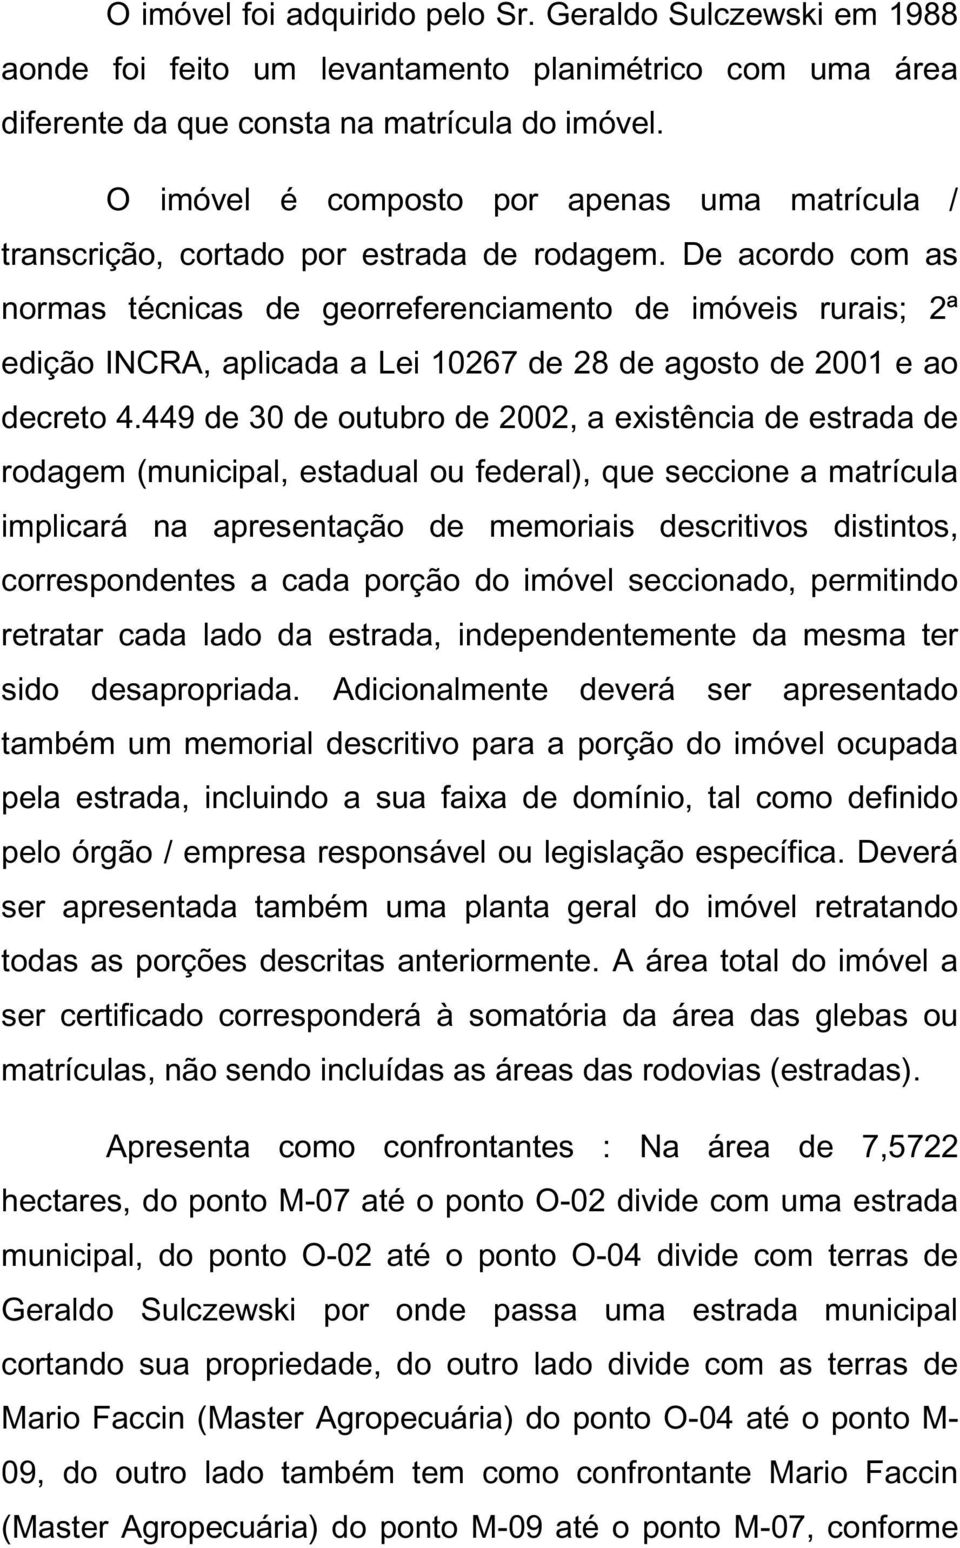 De acordo com as normas técnicas de georreferenciamento de imóveis rurais; 2ª edição INCRA, aplicada a Lei 10267 de 28 de agosto de 2001 e ao decreto 4.